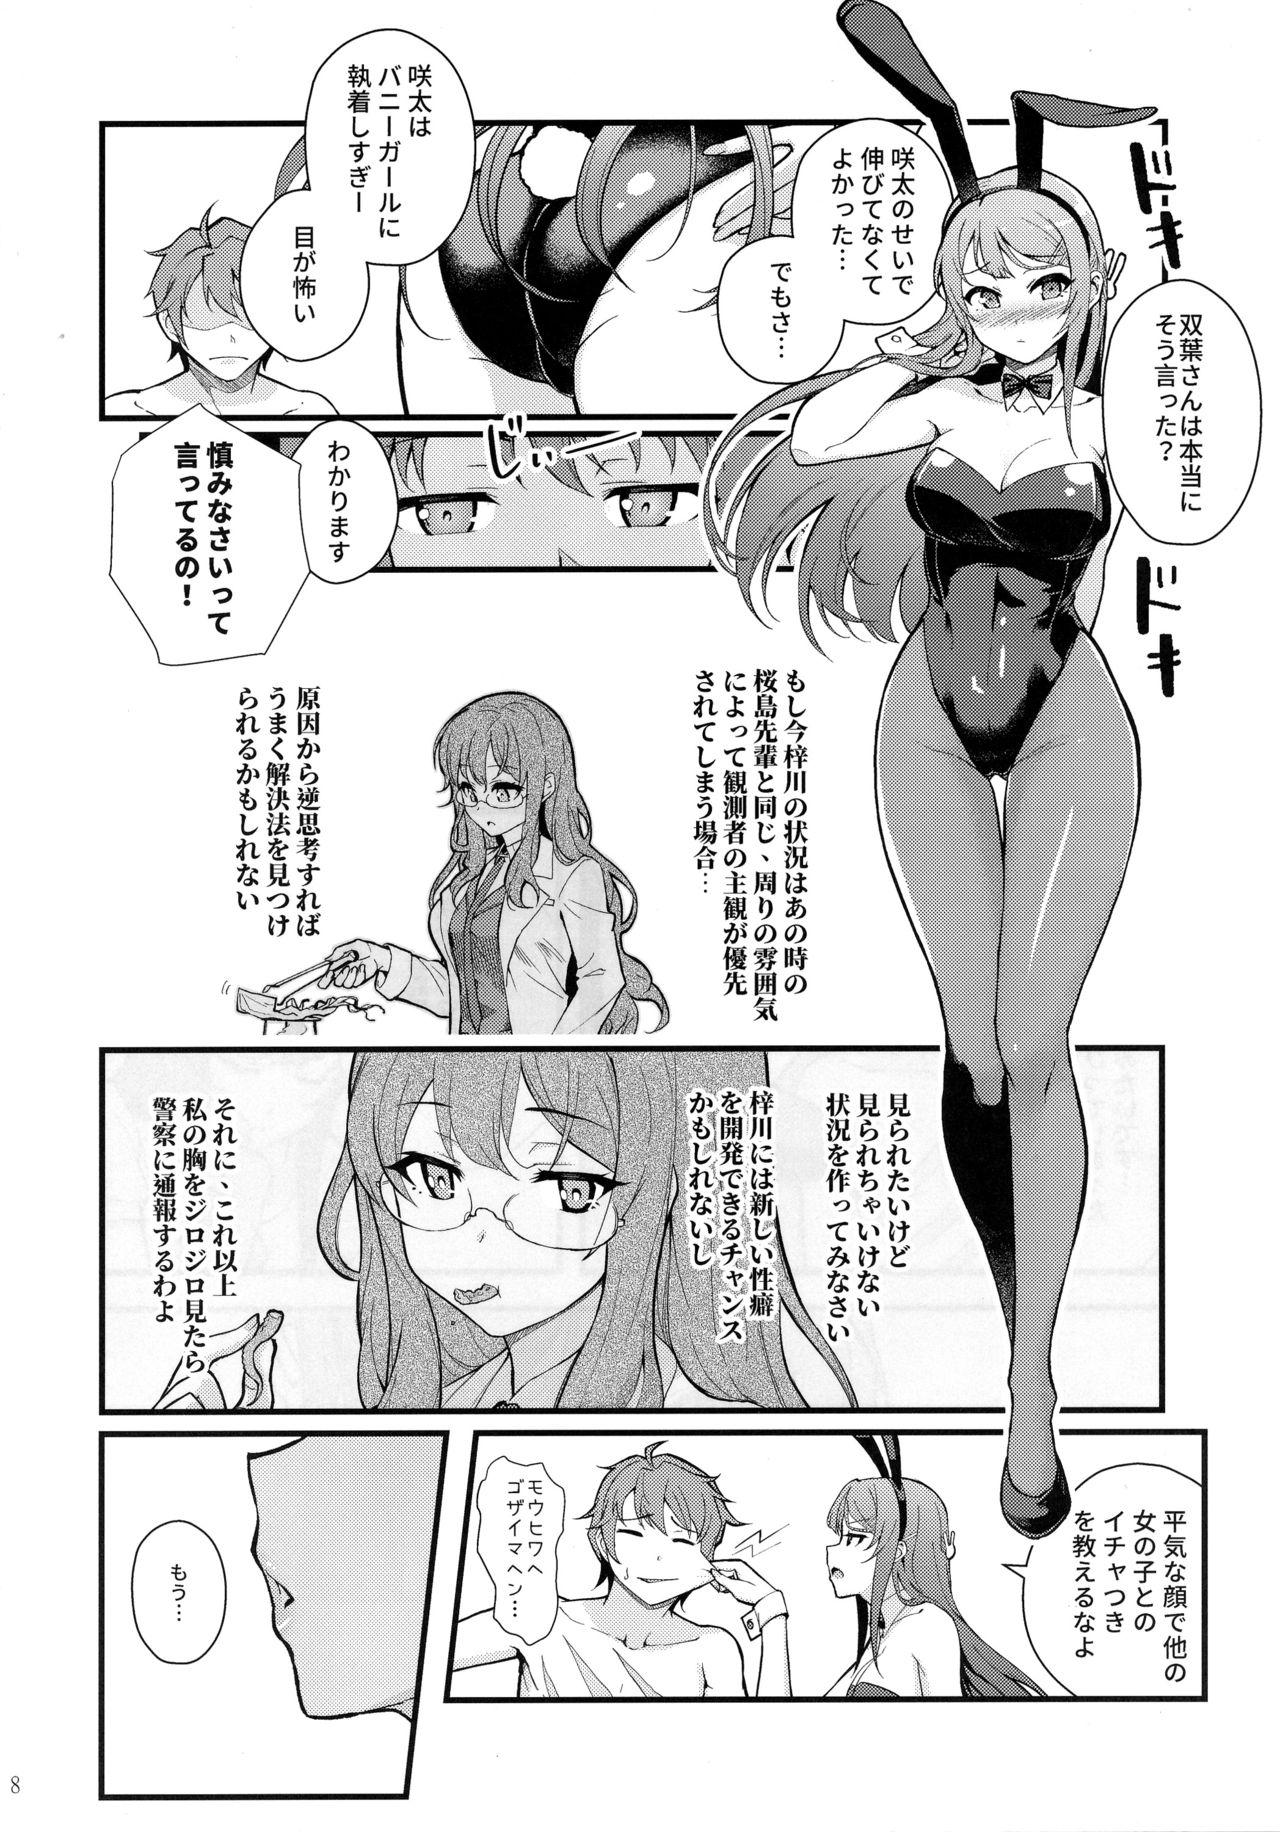 Licking Bunny Lovers - Seishun buta yarou wa bunny girl senpai no yume o minai Cornudo - Page 9